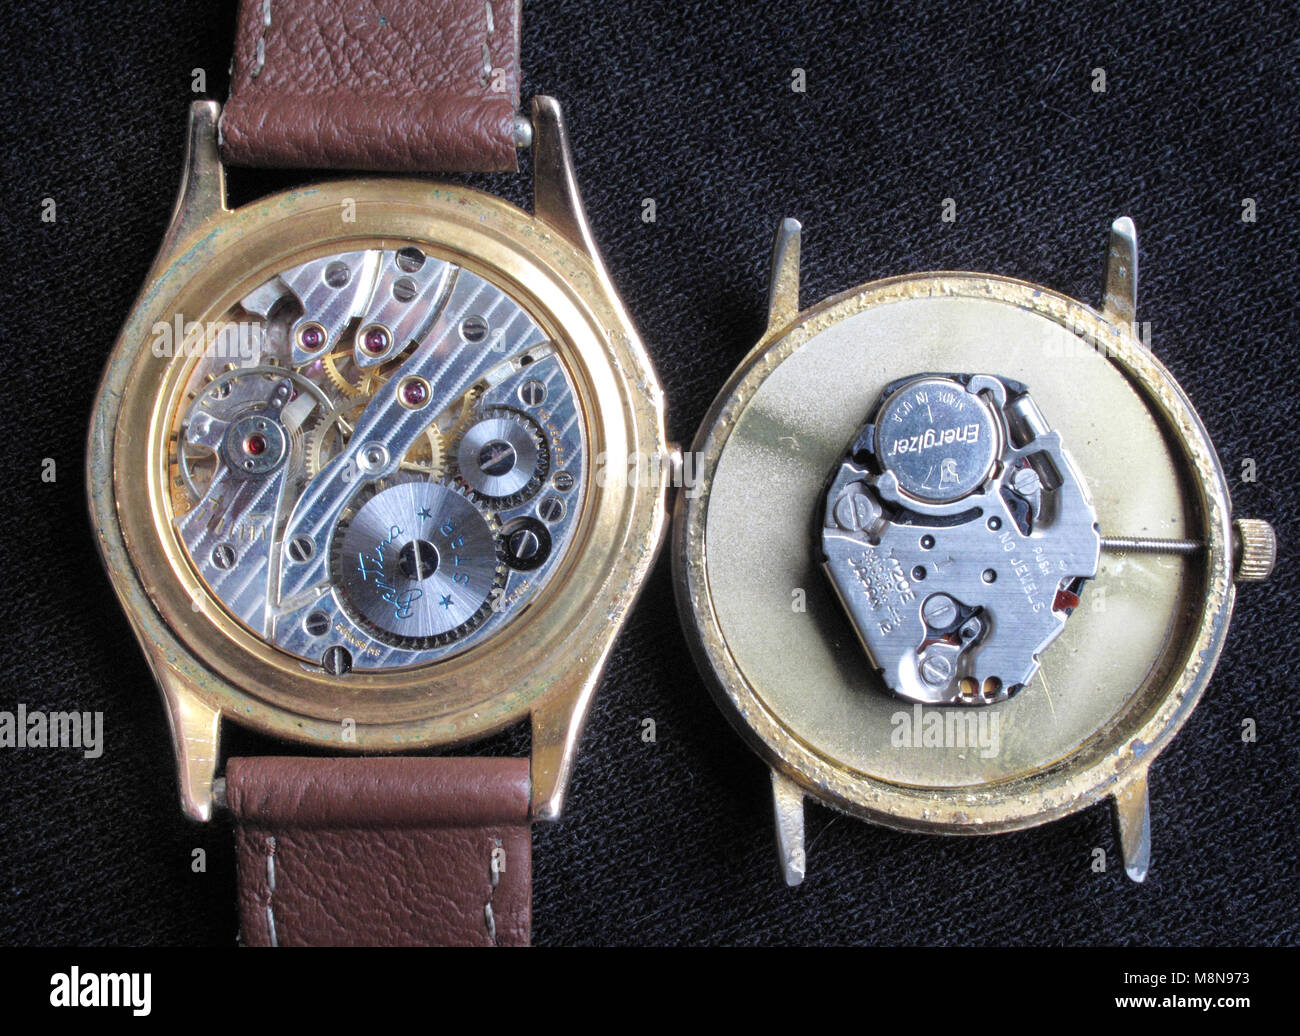 Comparaison de l'intérieur d'une batterie mécanique et quartz watch Banque D'Images